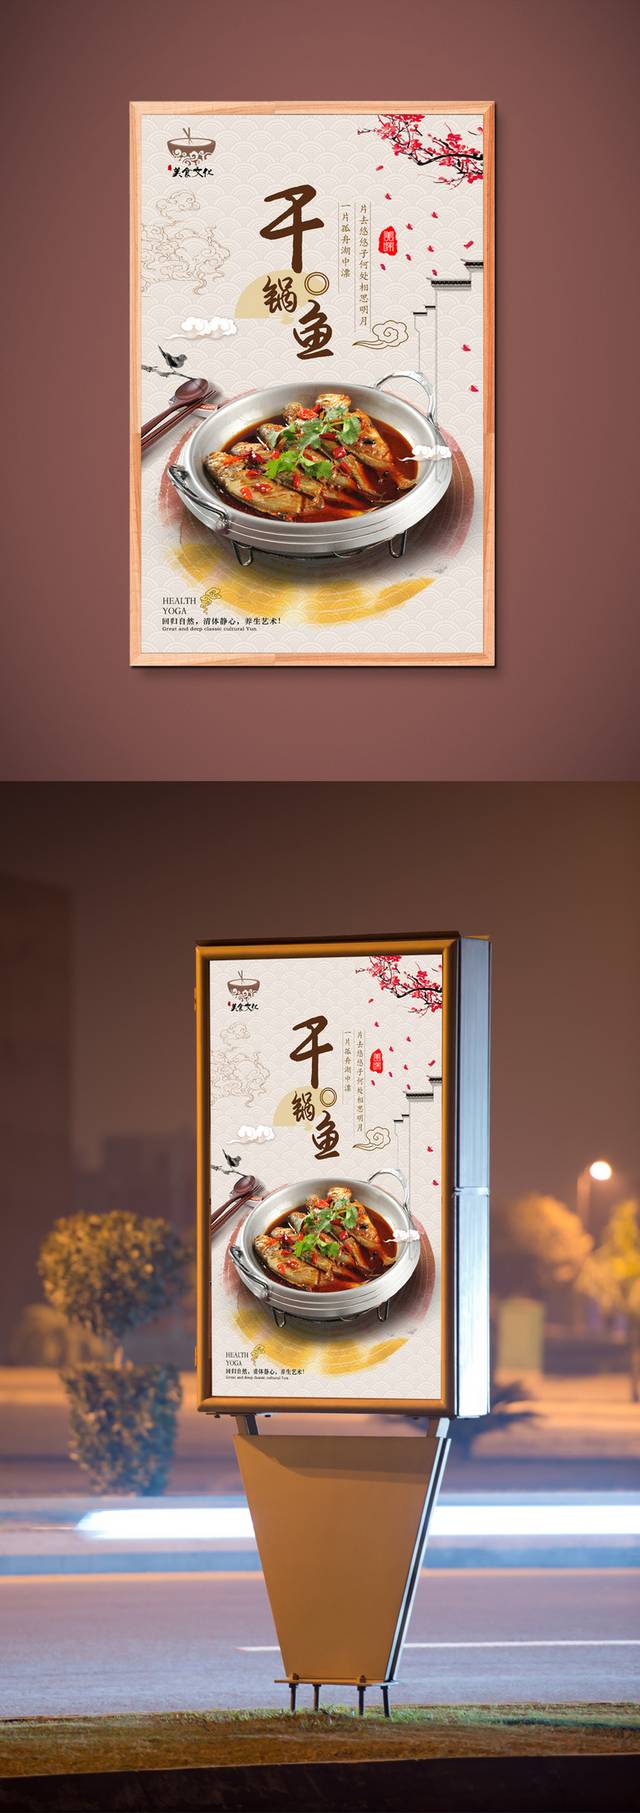 干锅鱼餐馆美食菜品海报